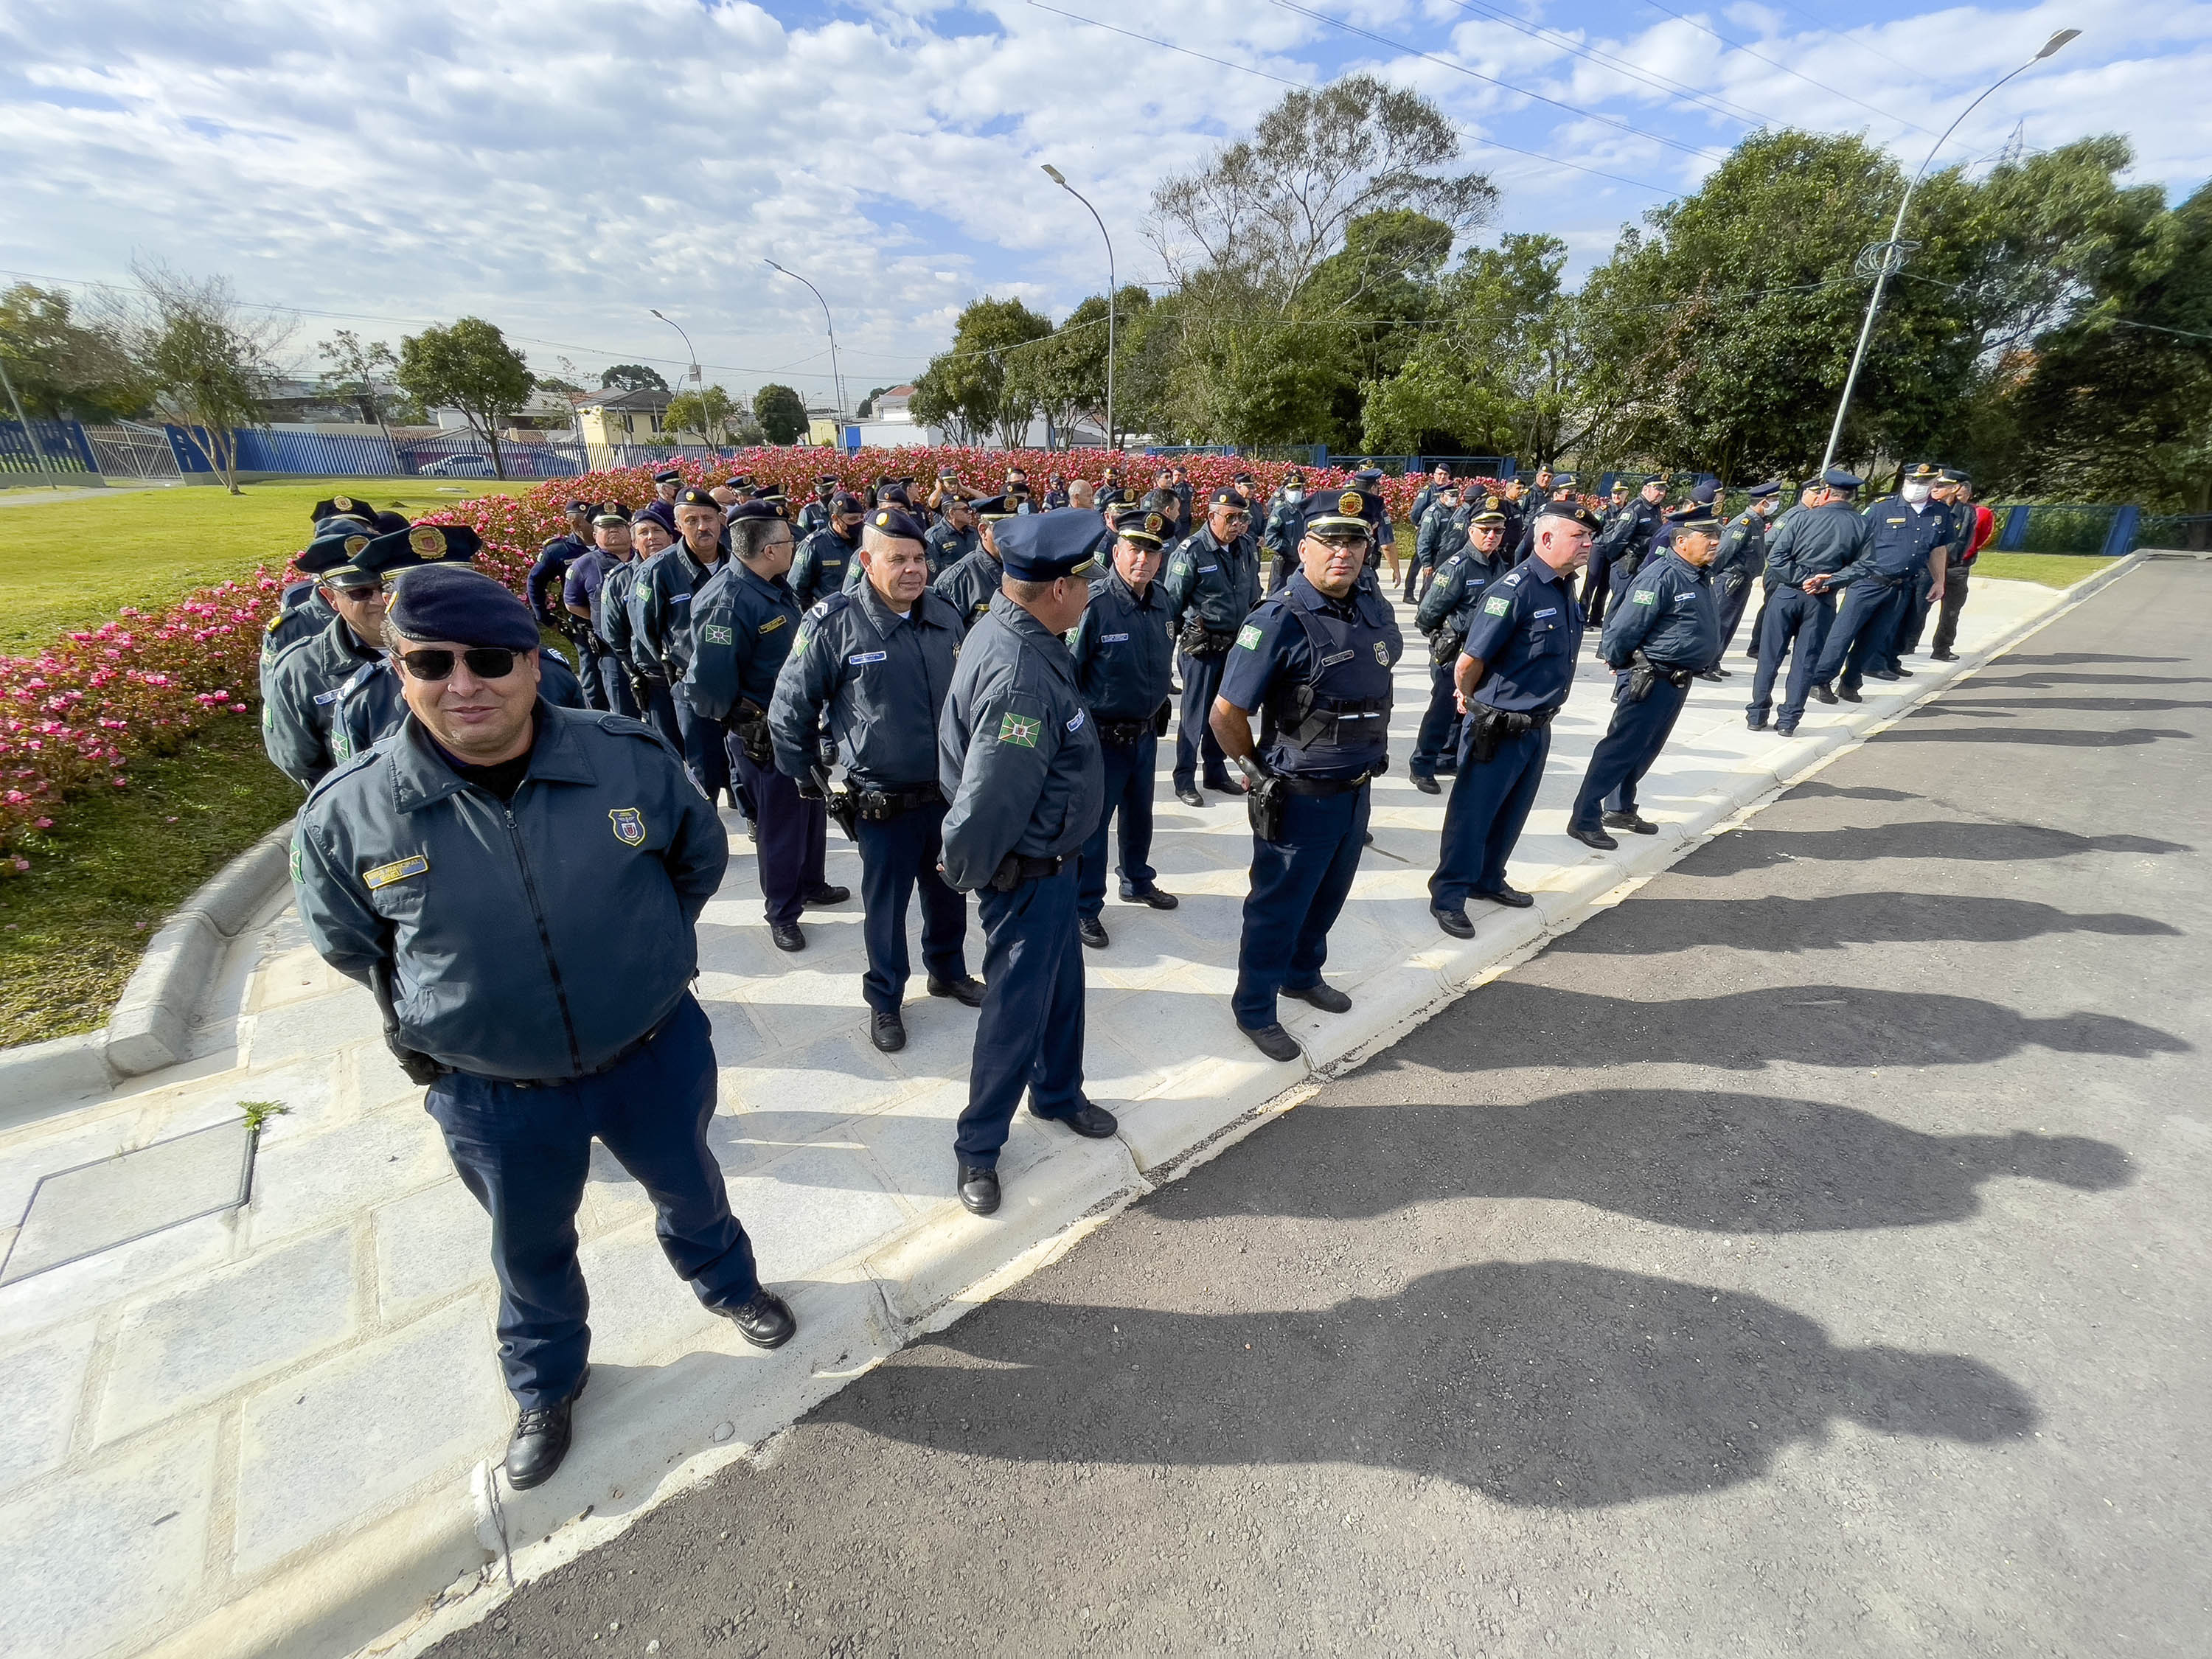 Guardas municipais treinam uso de arma elétrica - Prefeitura de Curitiba